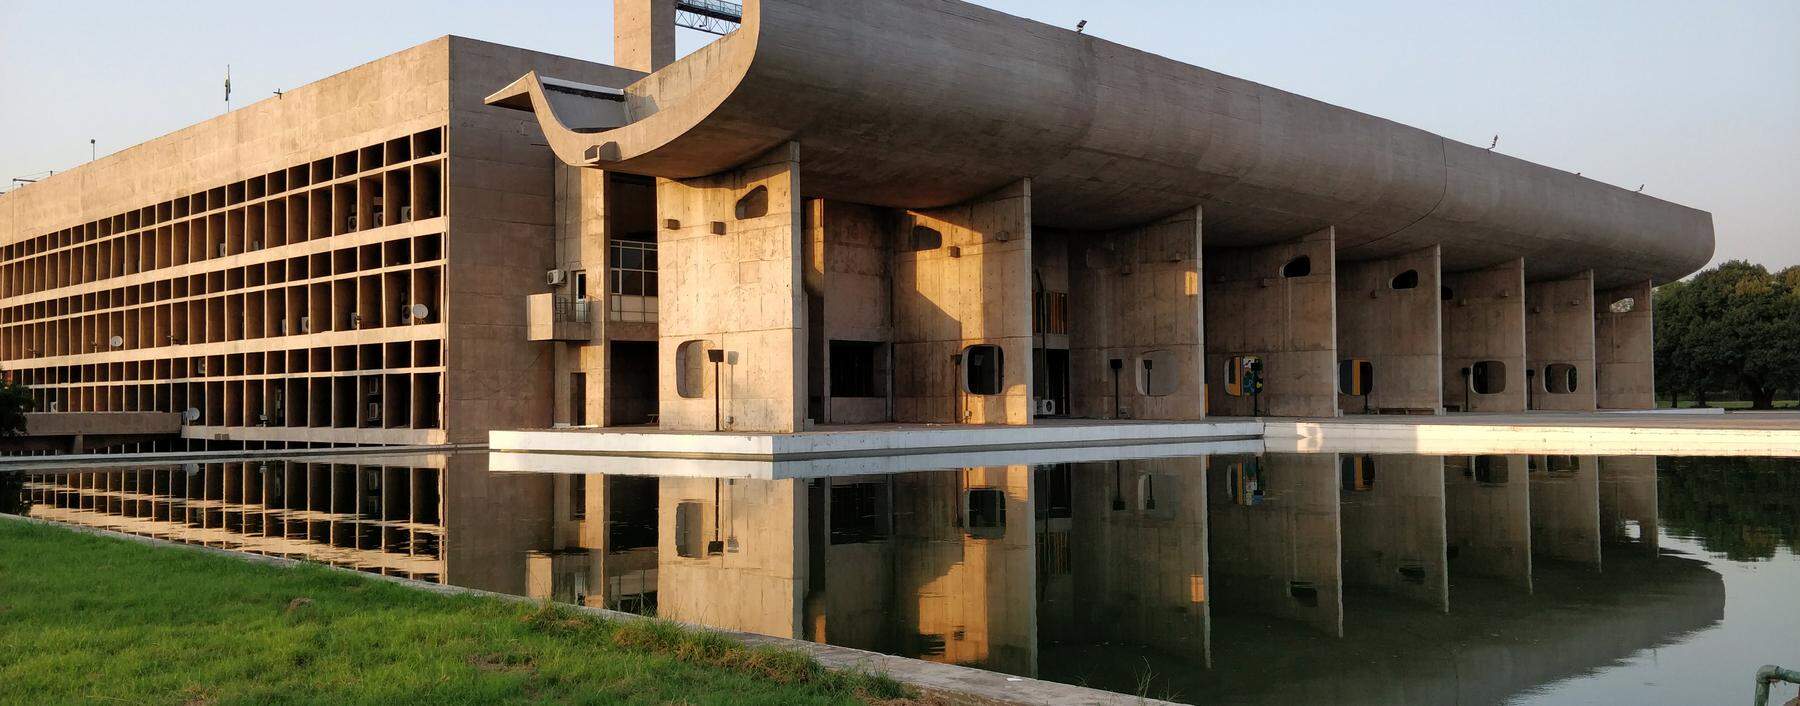 Der Palace of Assembly im Verwaltungsbezirk von Chandigarh gehört zum UNESCO Weltkulturerbe.